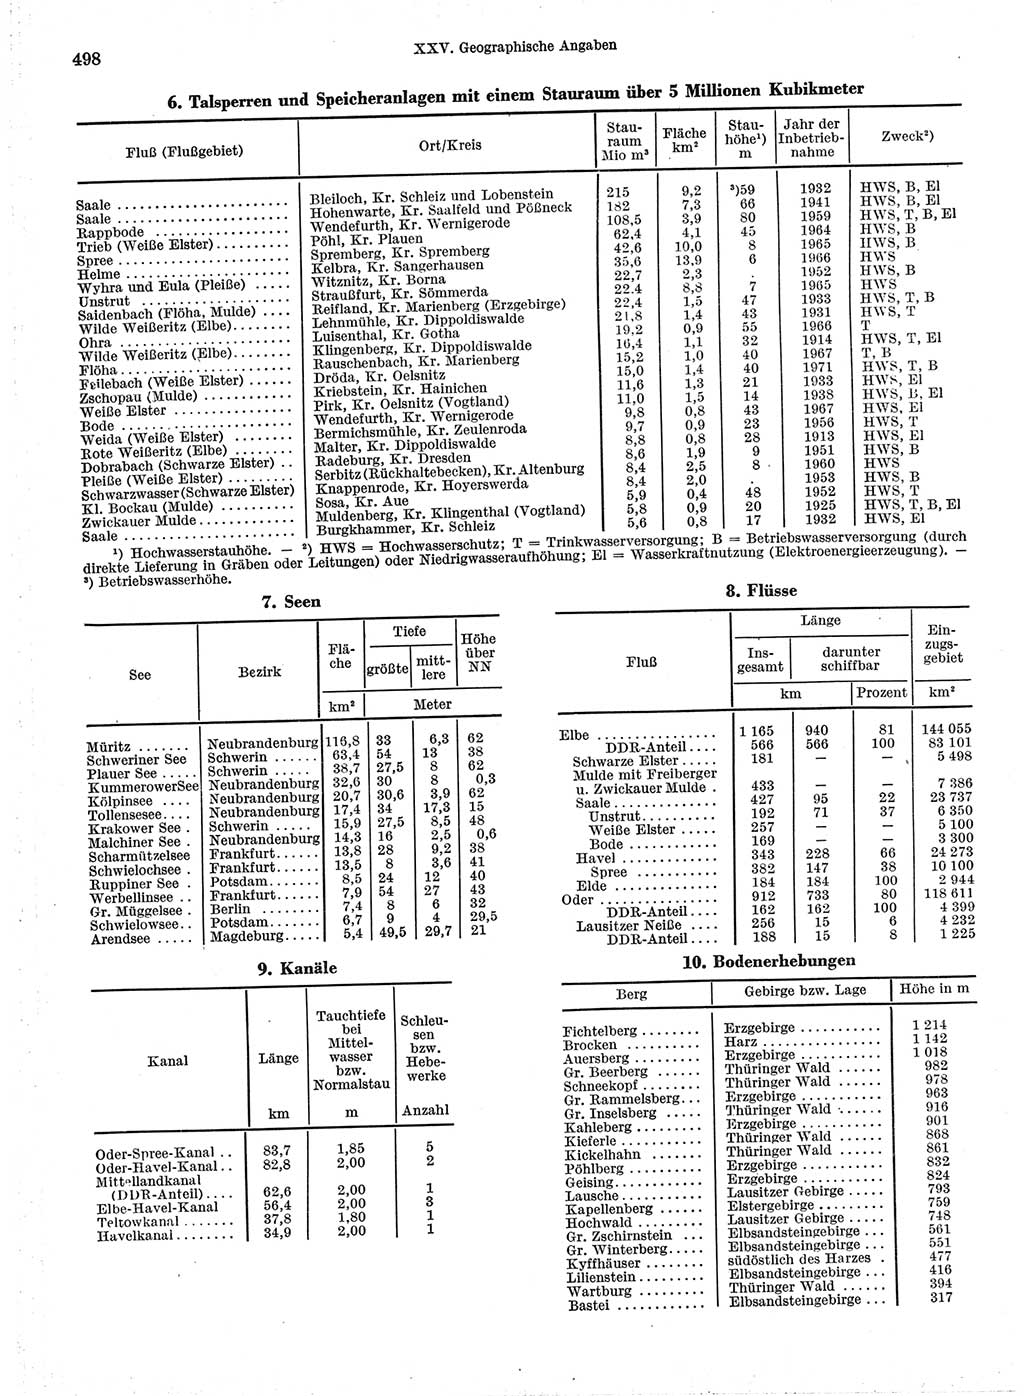 Statistisches Jahrbuch der Deutschen Demokratischen Republik (DDR) 1974, Seite 498 (Stat. Jb. DDR 1974, S. 498)